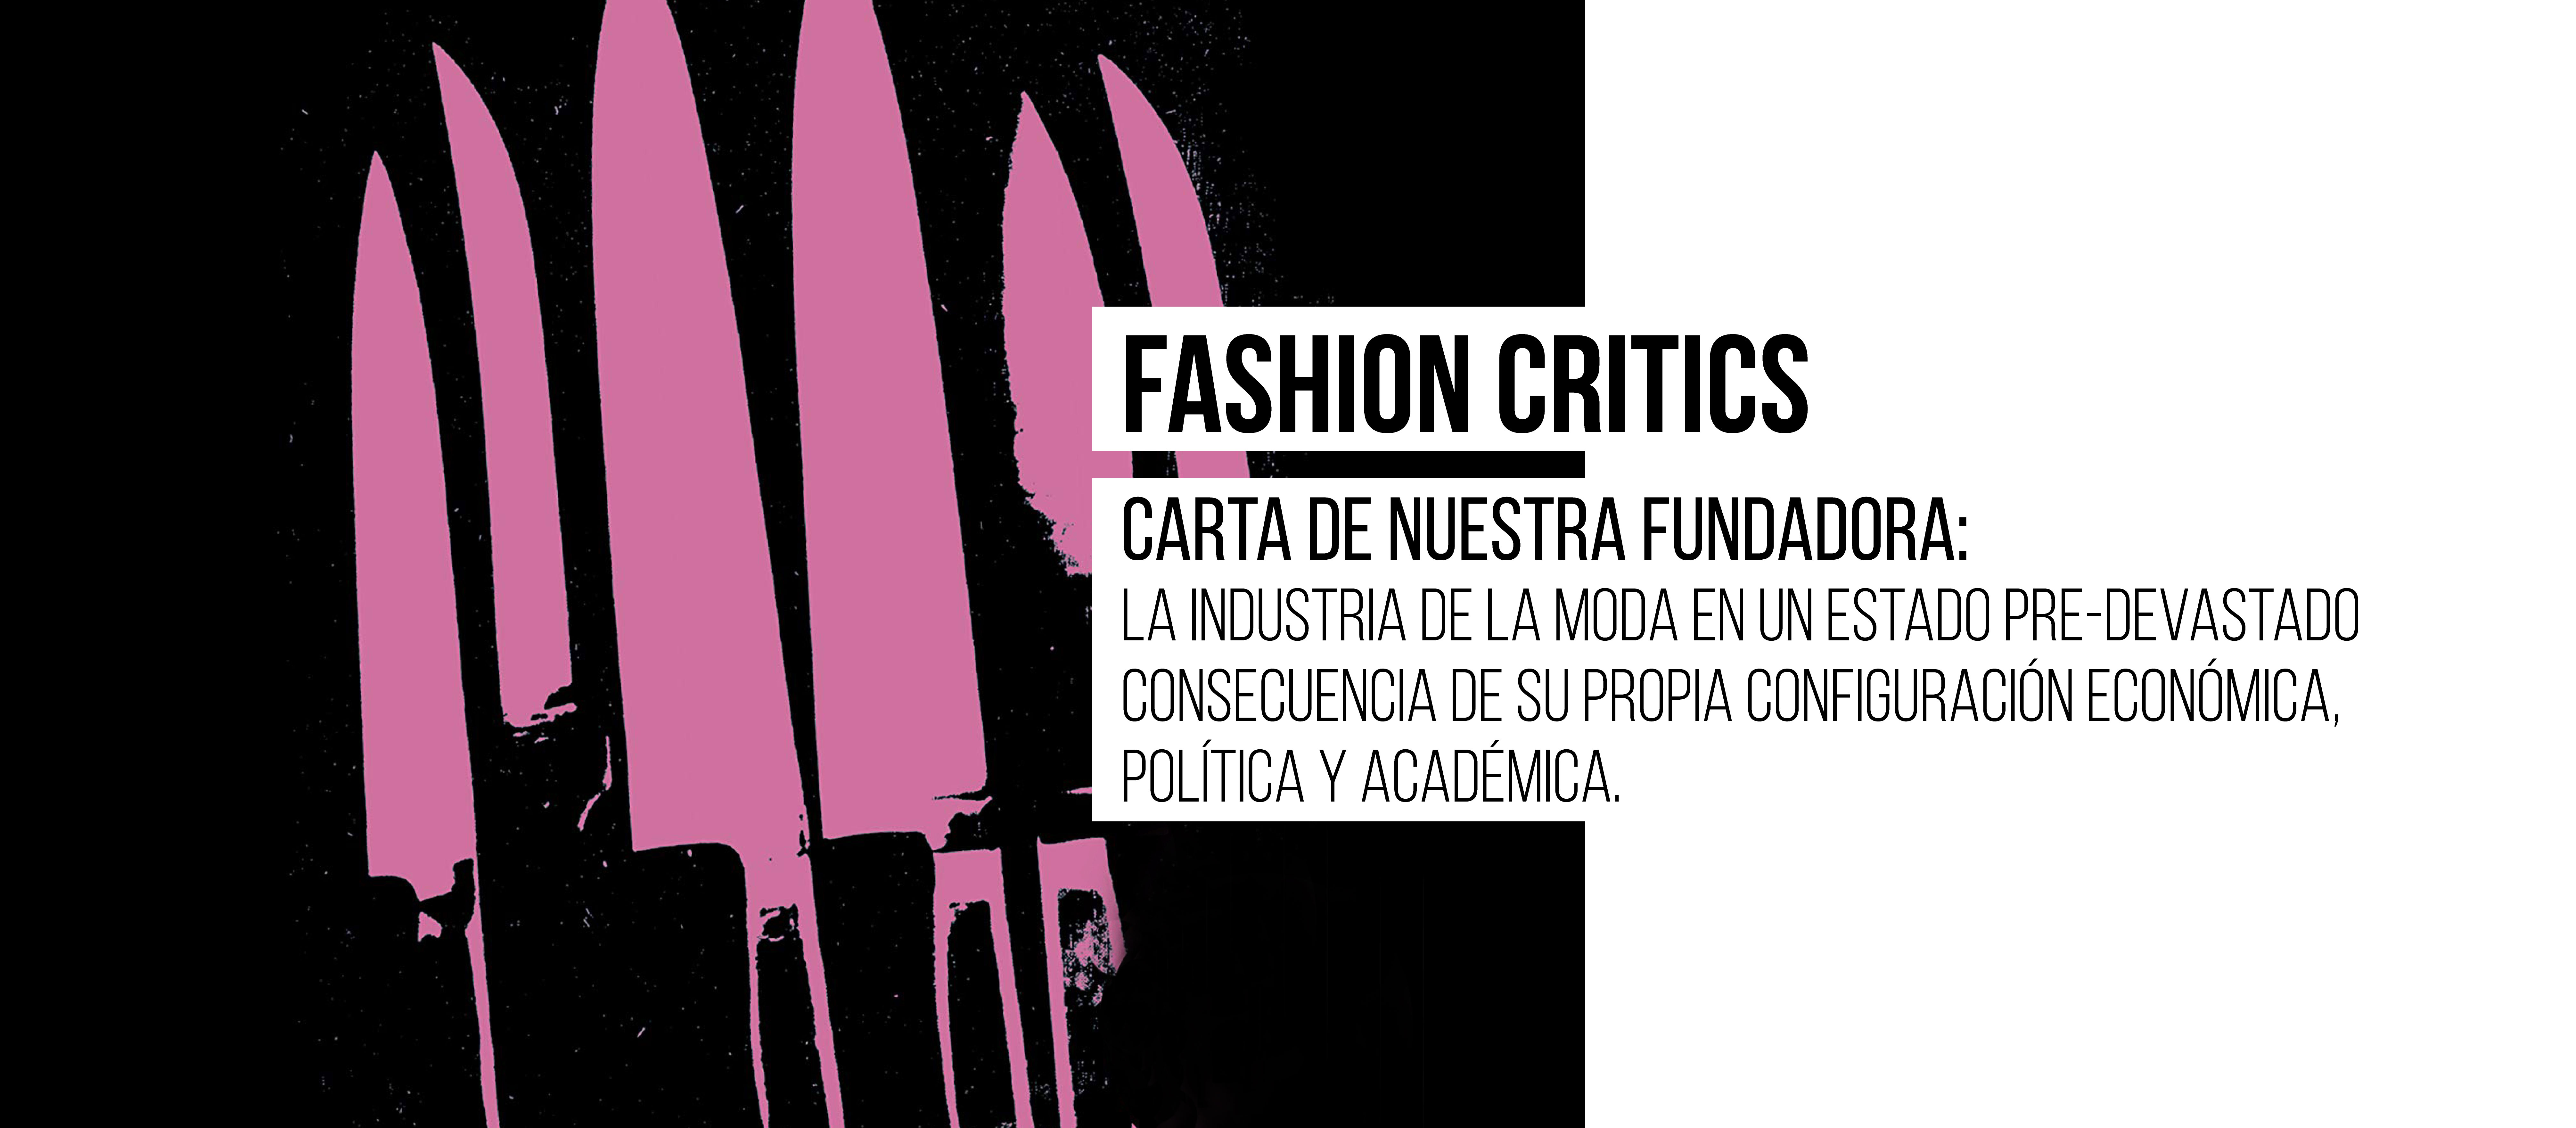 #Fashioncritics Carta de nuestra fundadora: La moda en un estado pre-devastado consecuencia de su propia configuración económica,  política y académica 